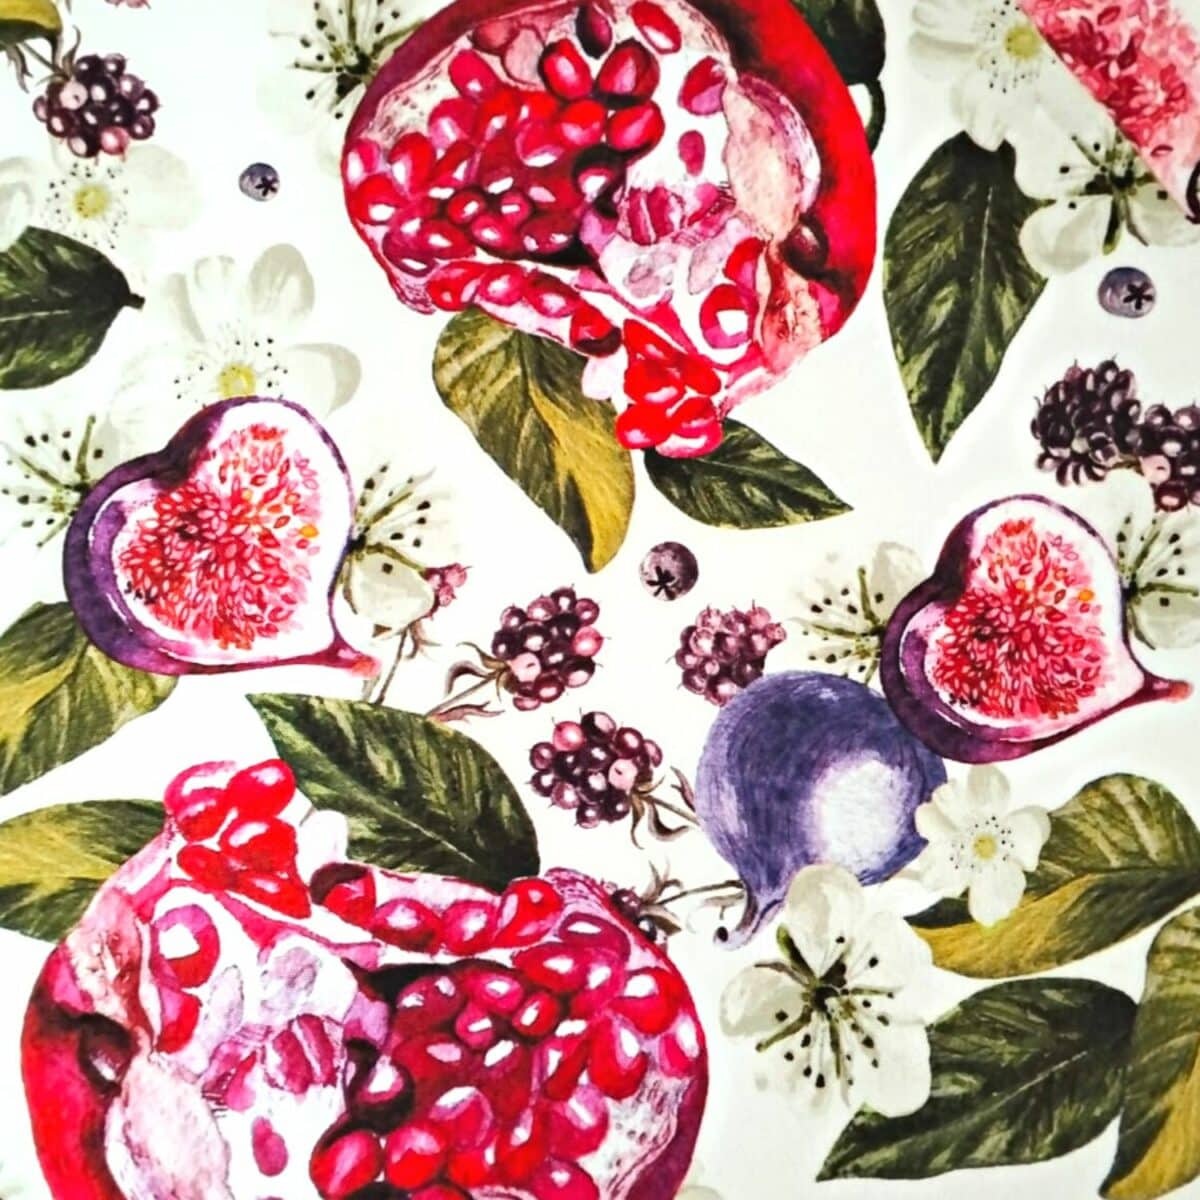 fichi-e-melograni-tovaglia-antimacchia-idrorepellente-frutti-multicolore-cucina-bianco-rosa-verde-dettaglio